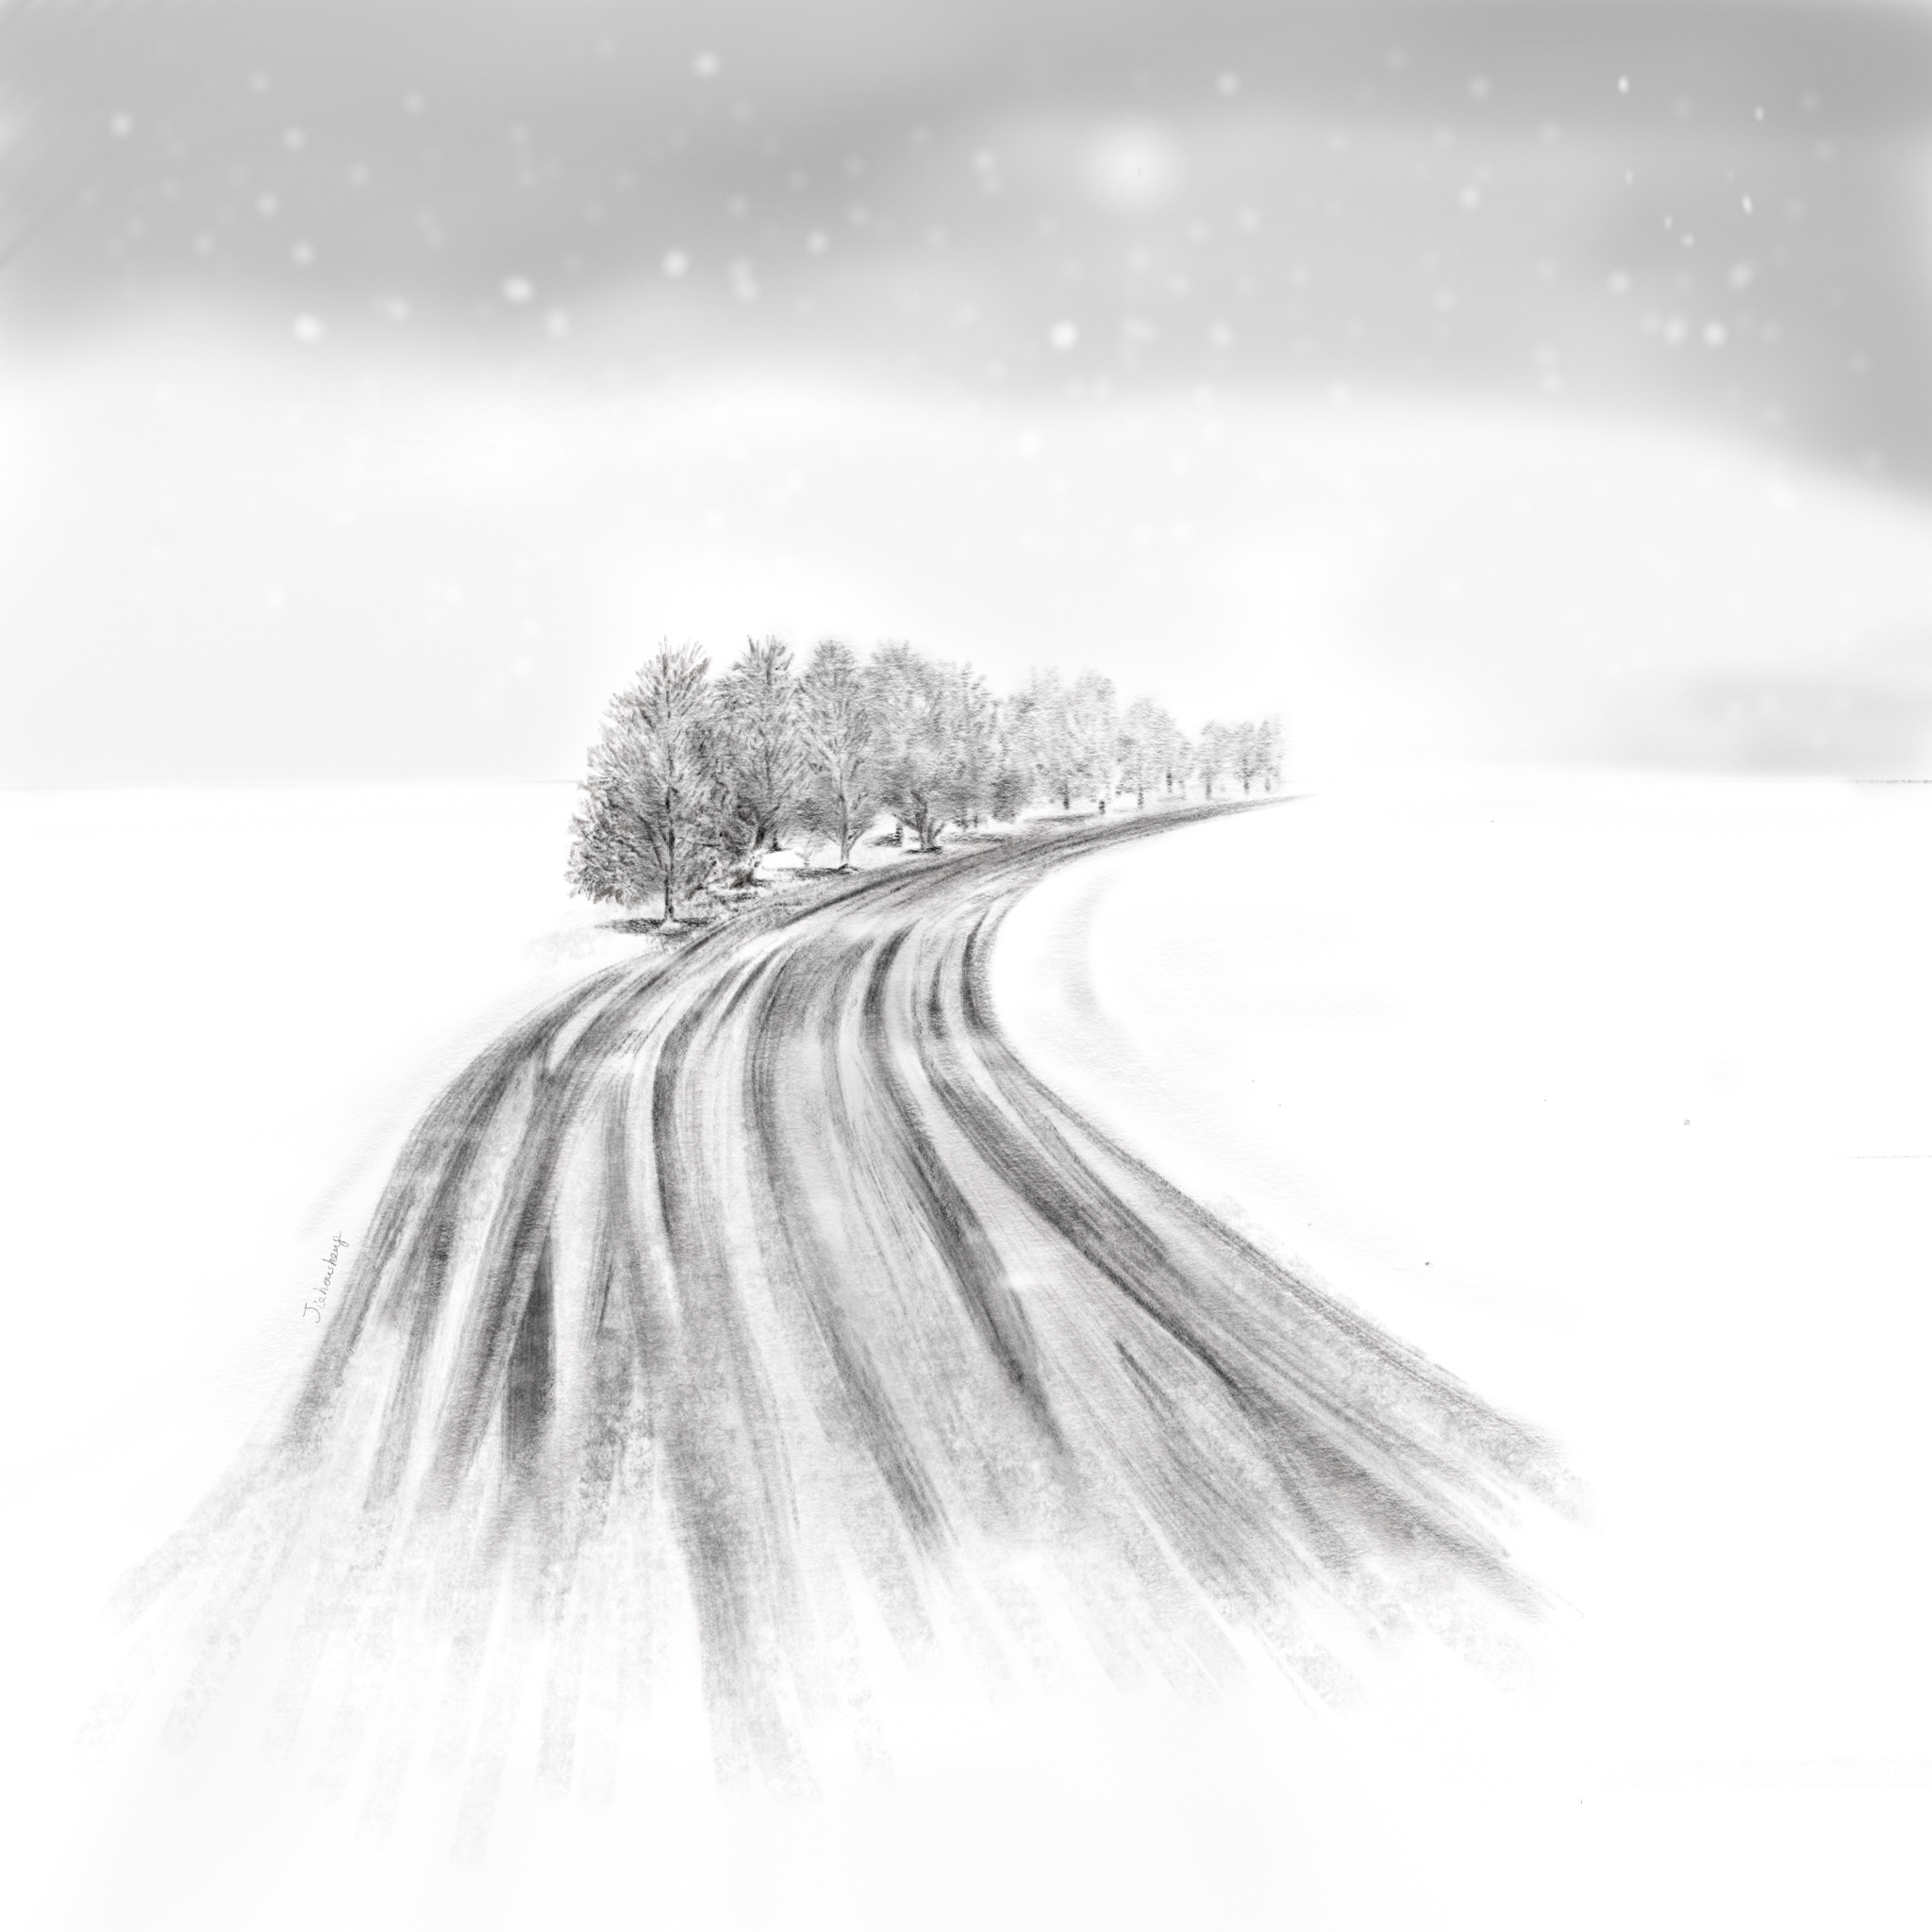 黑白漫画雪景图片